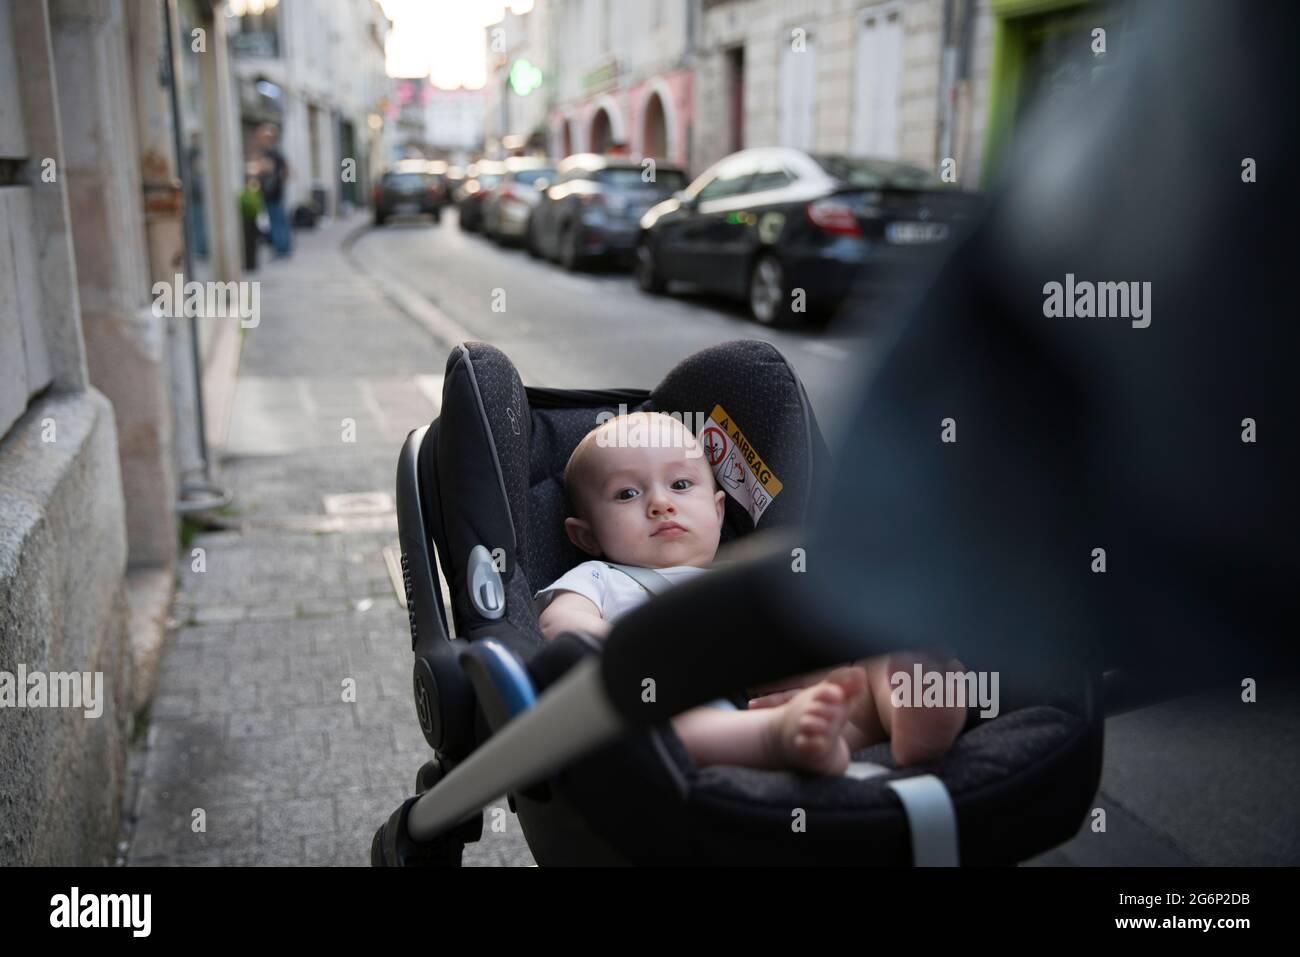 Un bébé étant poussé dans une rue dans une poussette Banque D'Images